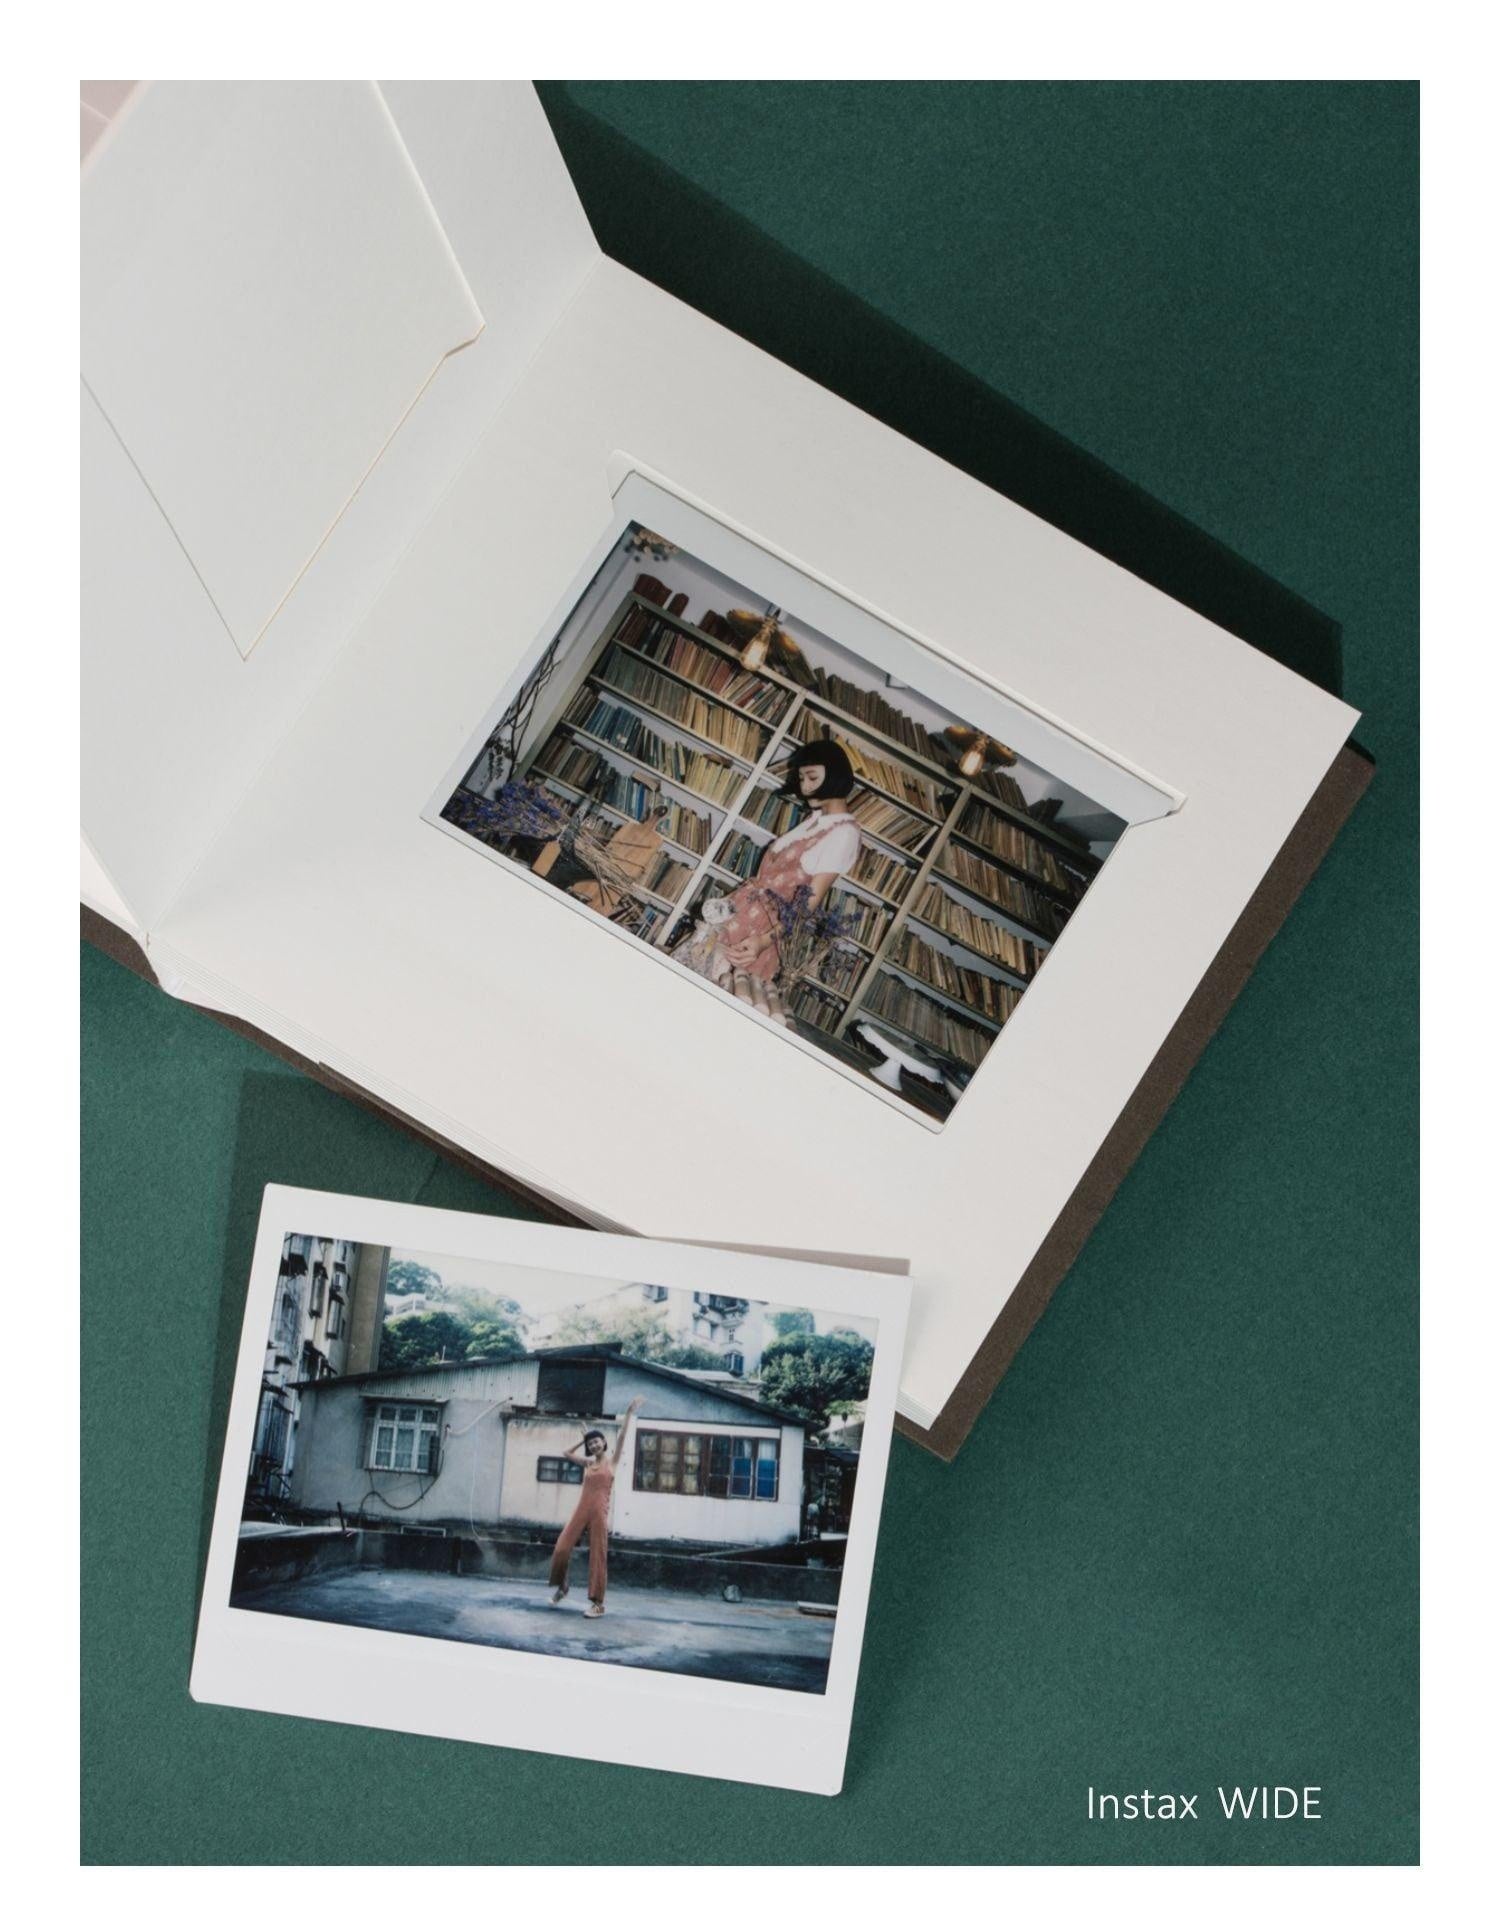 Polaroid Photo Album Instax WIDE Album Instax SQ Album. Minimalist Thick Card Mount Insert Photo Album Memory Baby Album Wedding Scrapbook